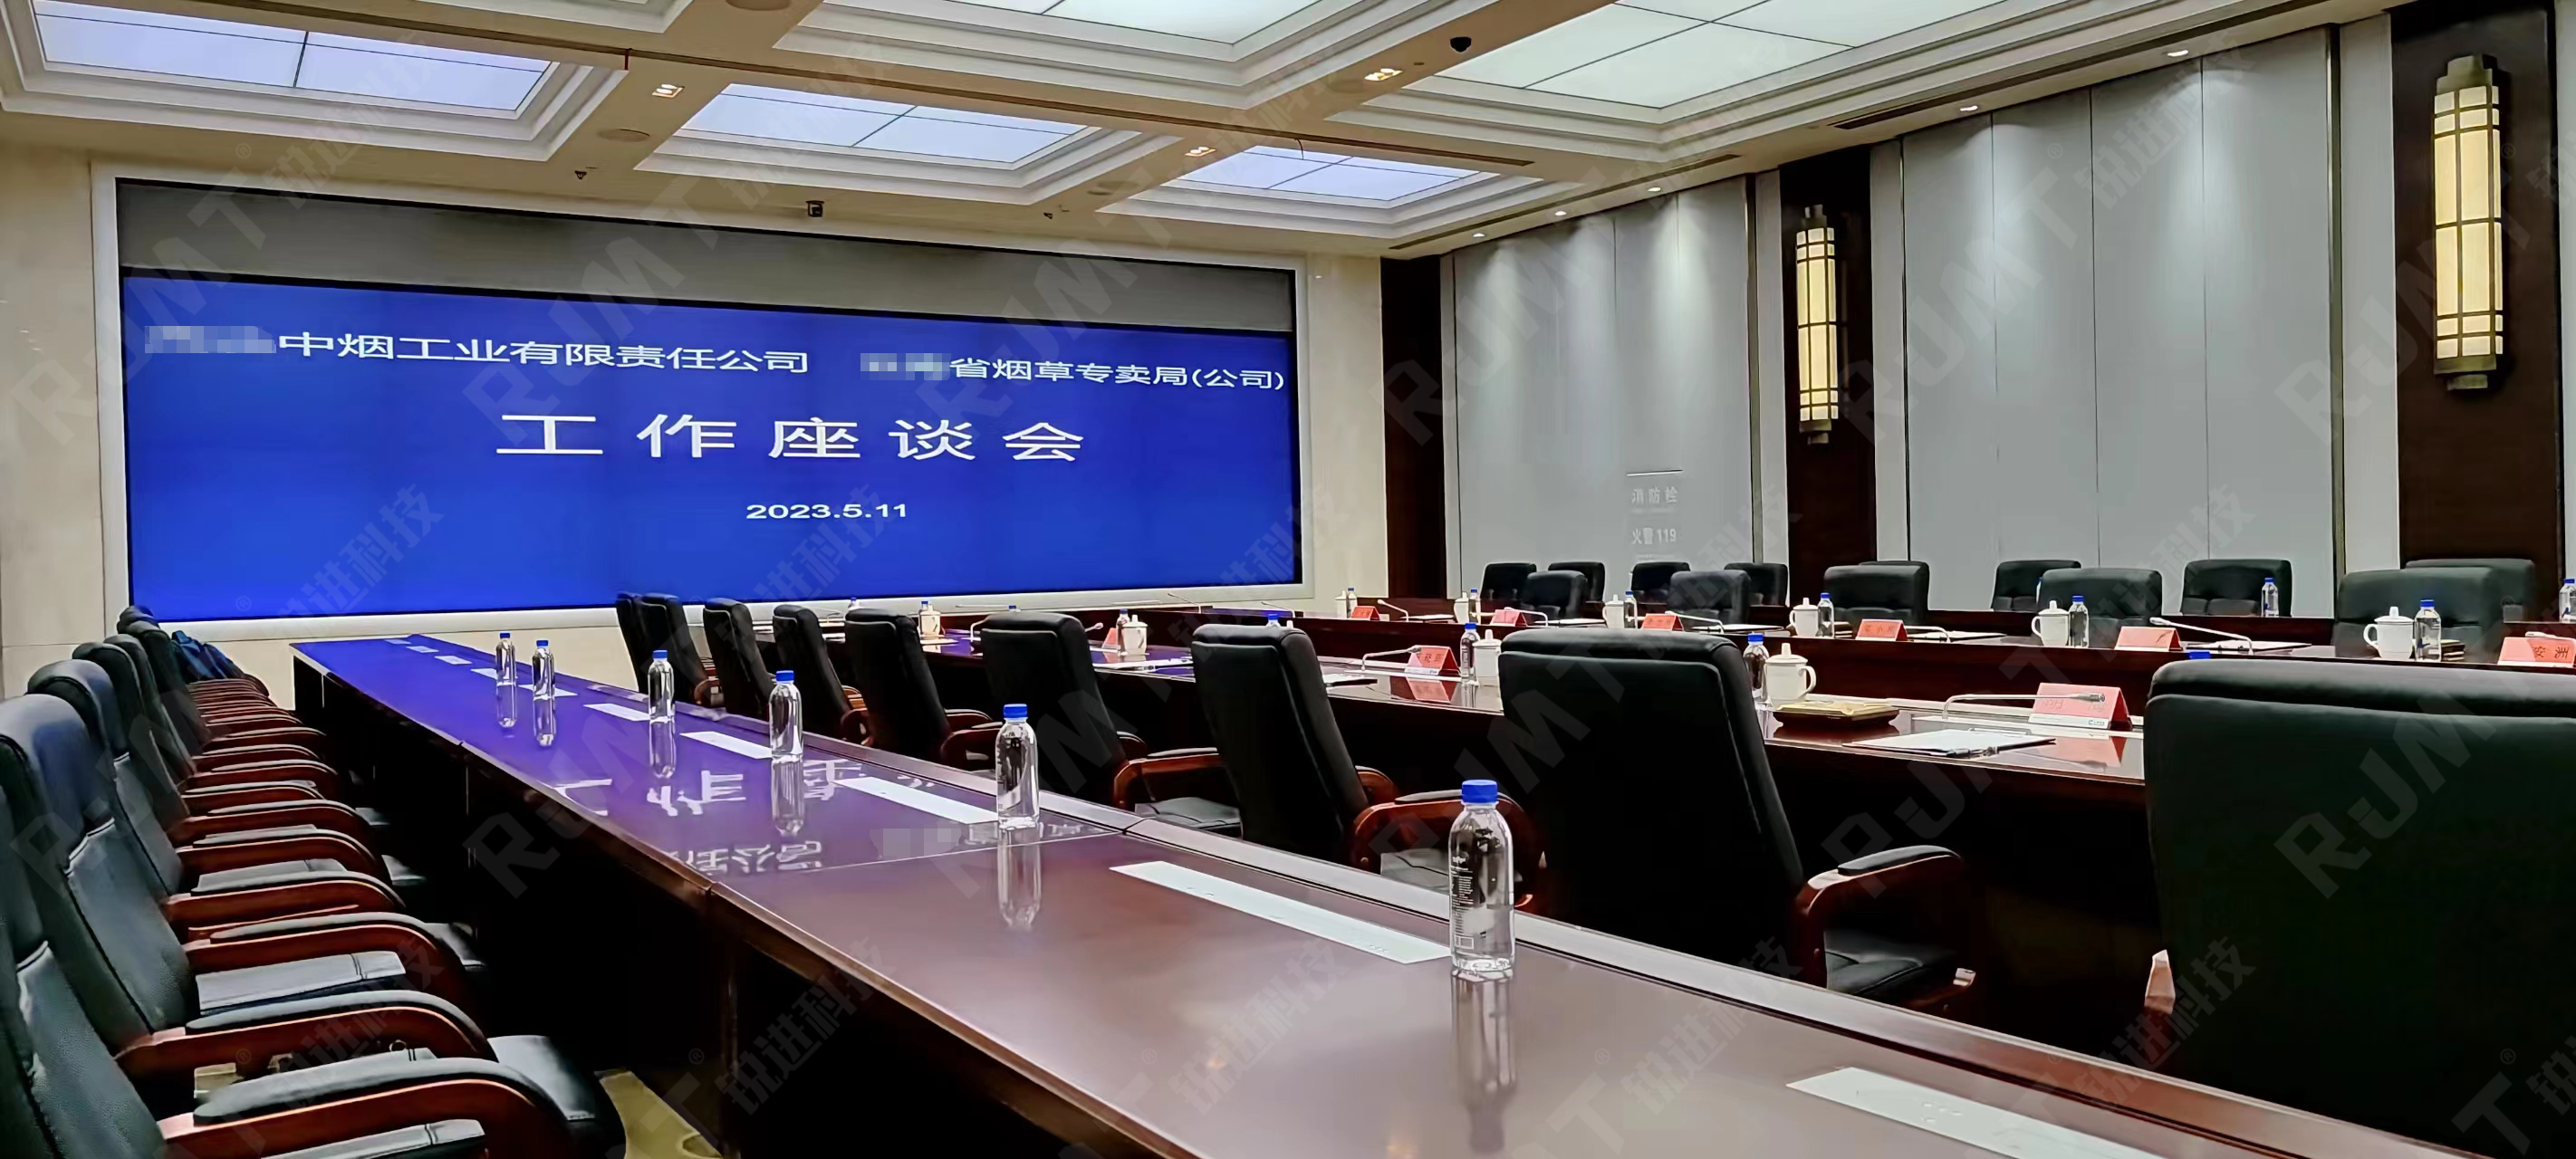 中国烟草总公司某省公司全面启用
国产信创安全无纸化会议